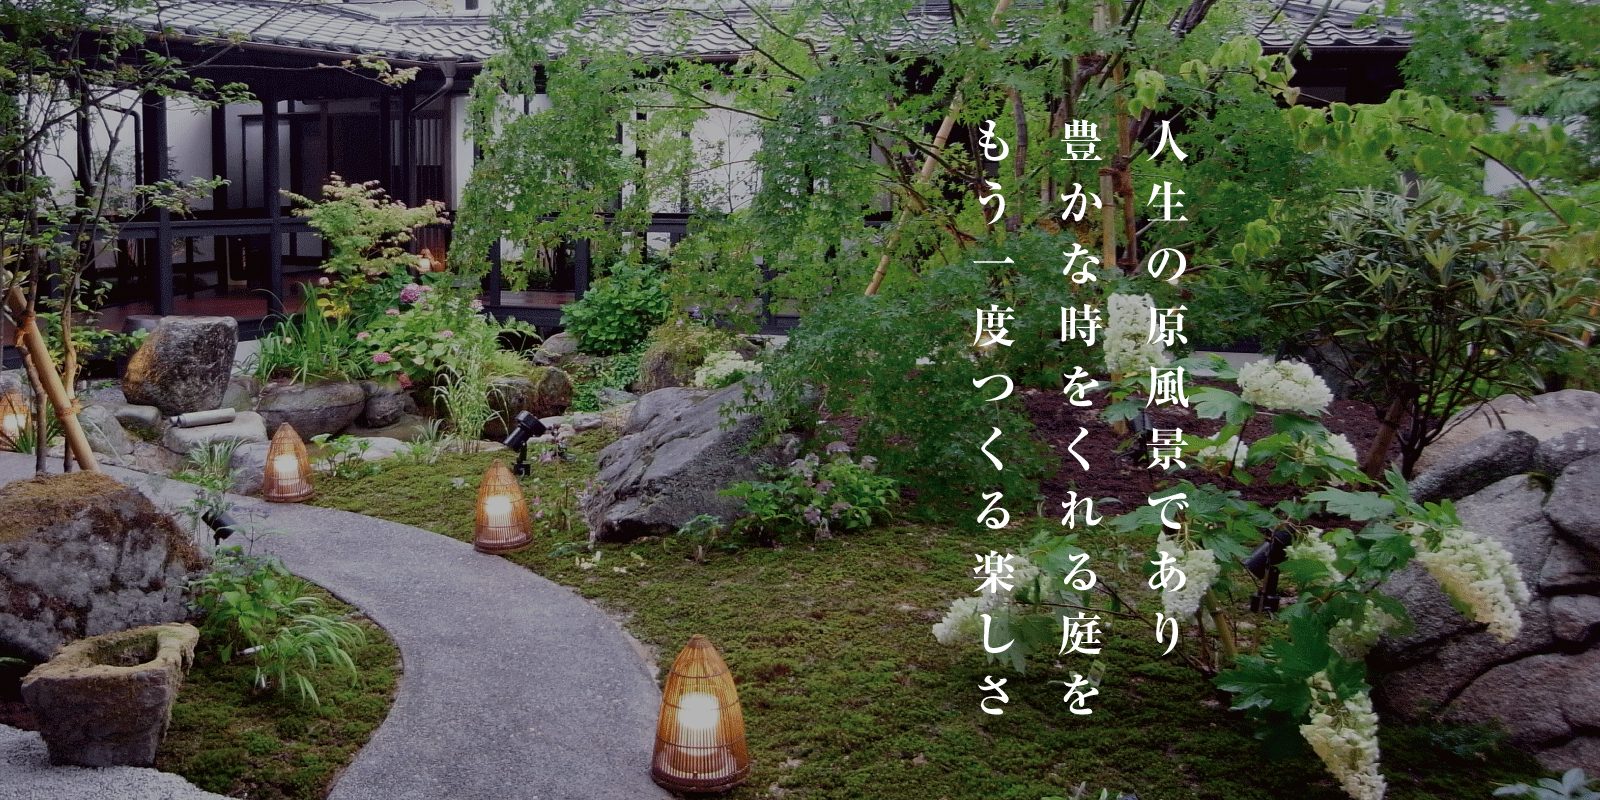 茶花の里 福岡県久留米市 お客様の想いに寄り添う庭づくり